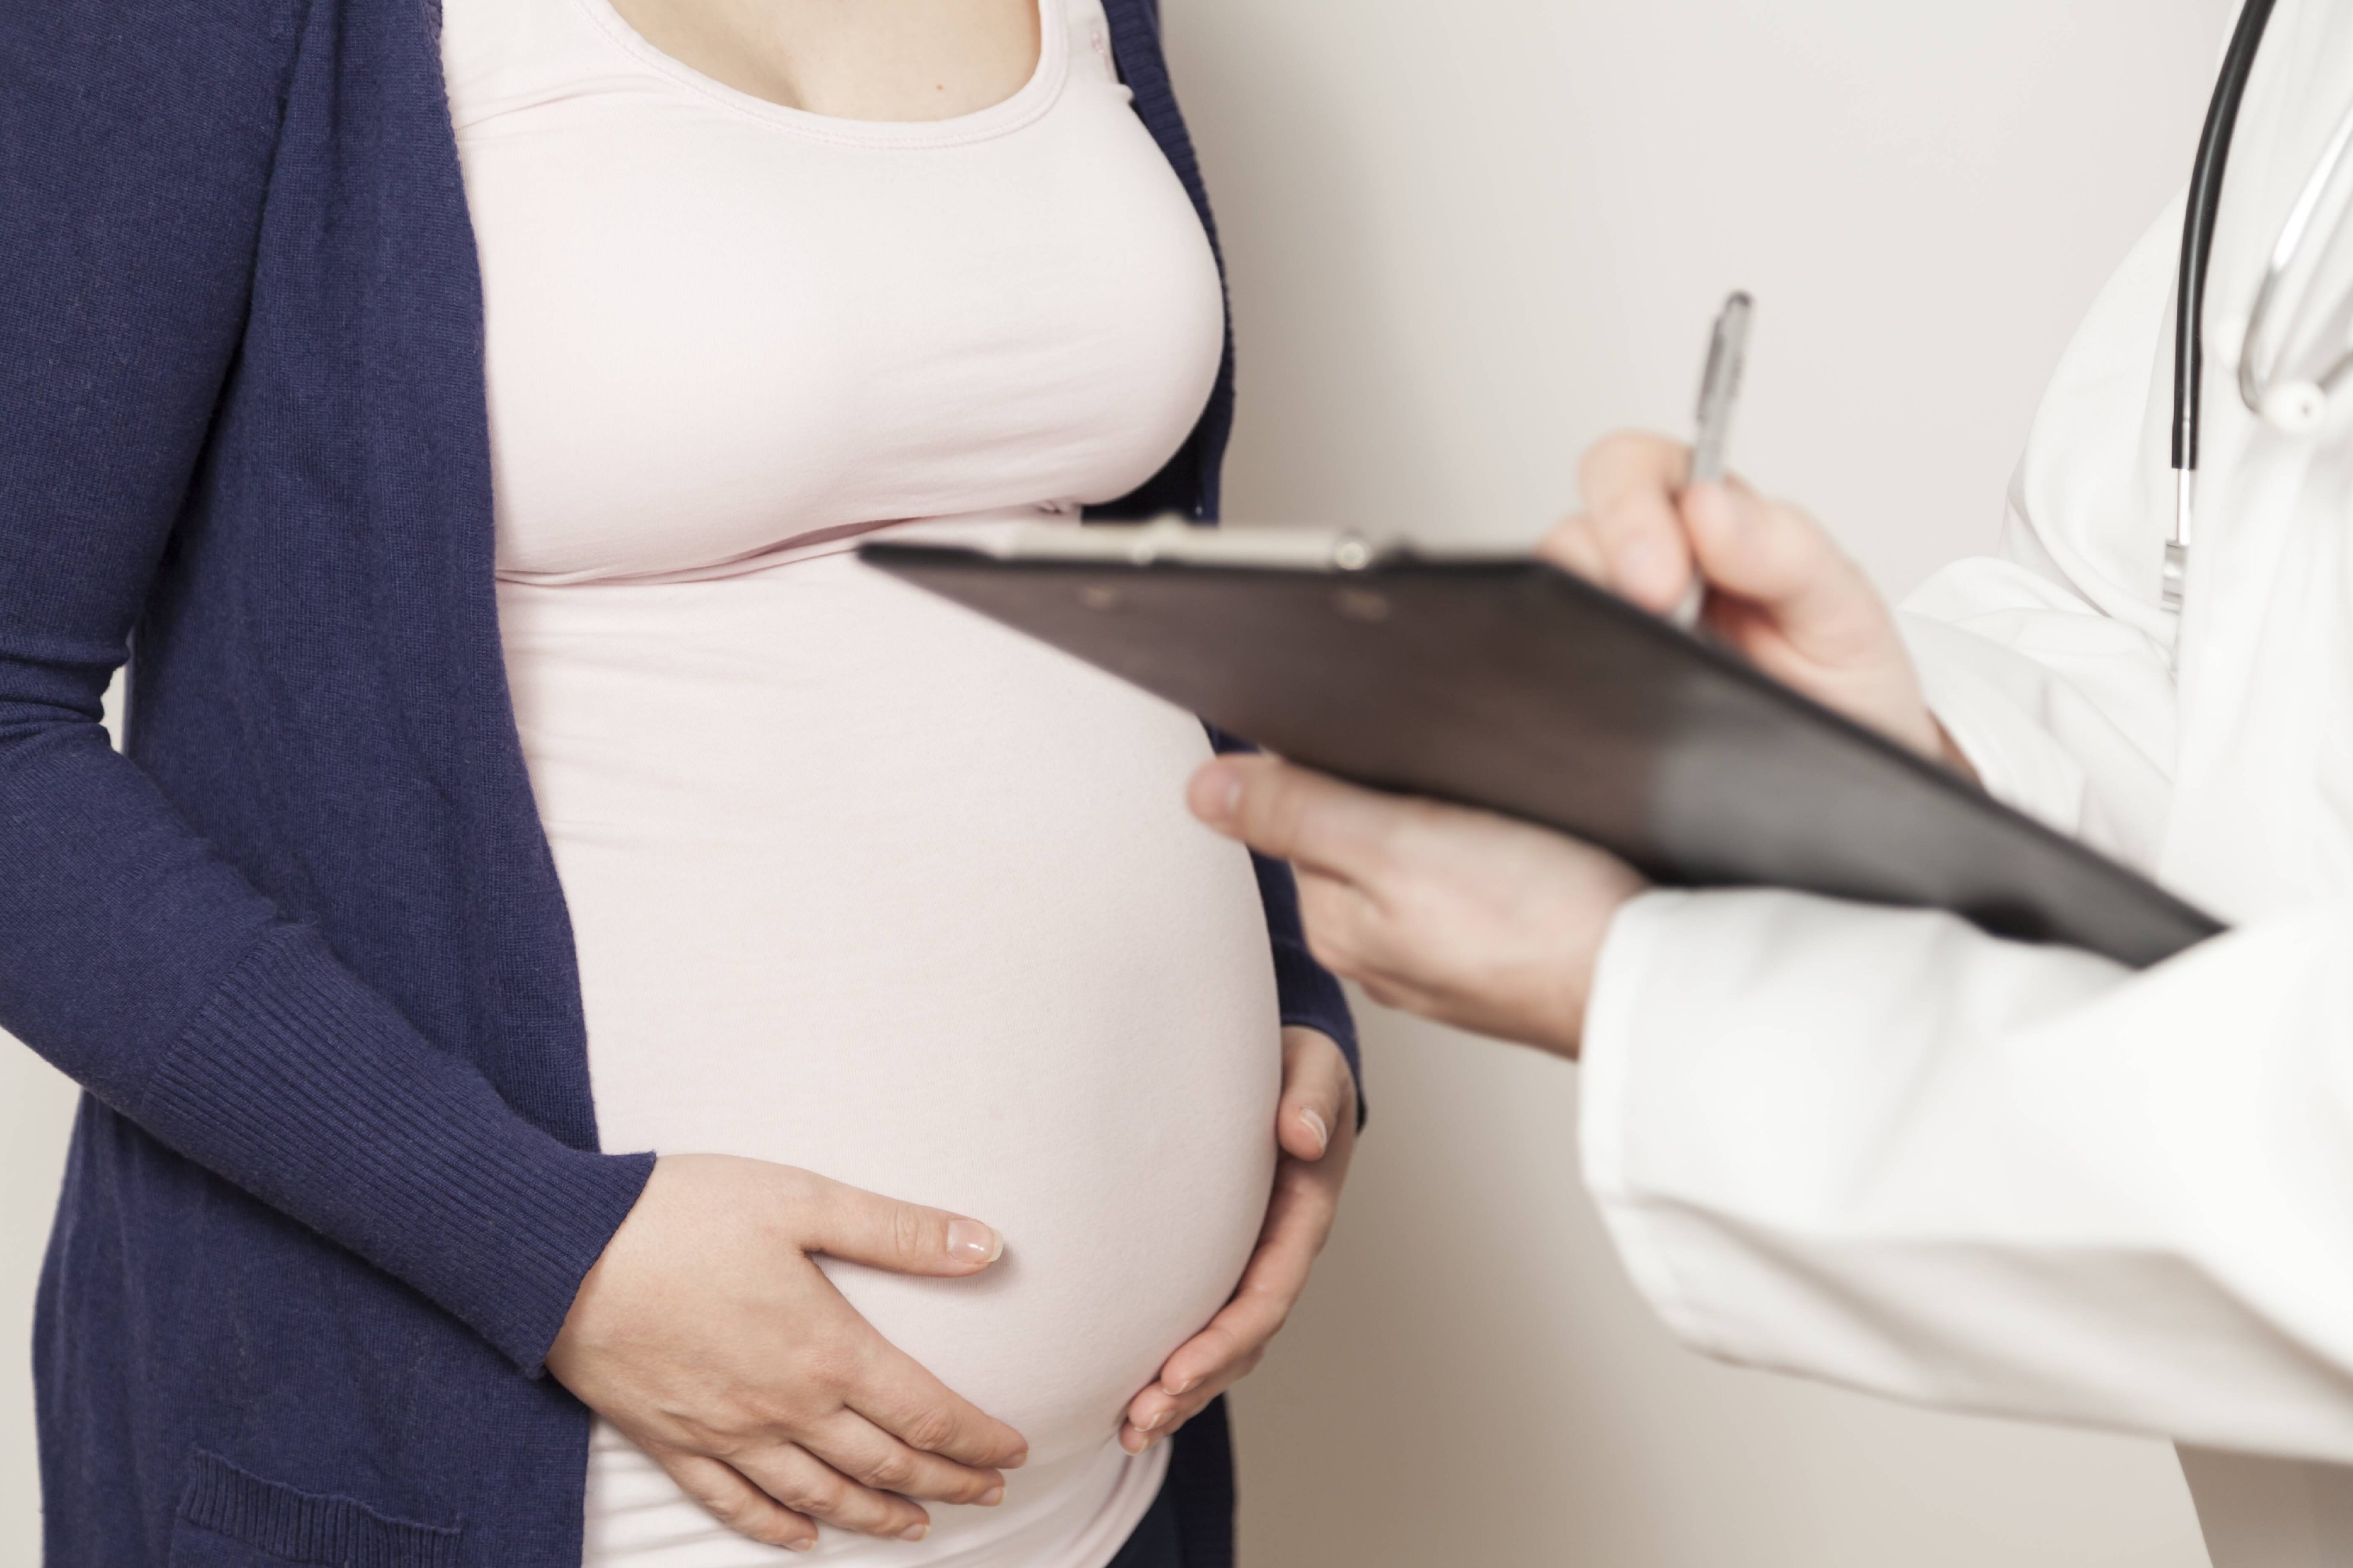 Секс во время беременности: когда, как, сколько